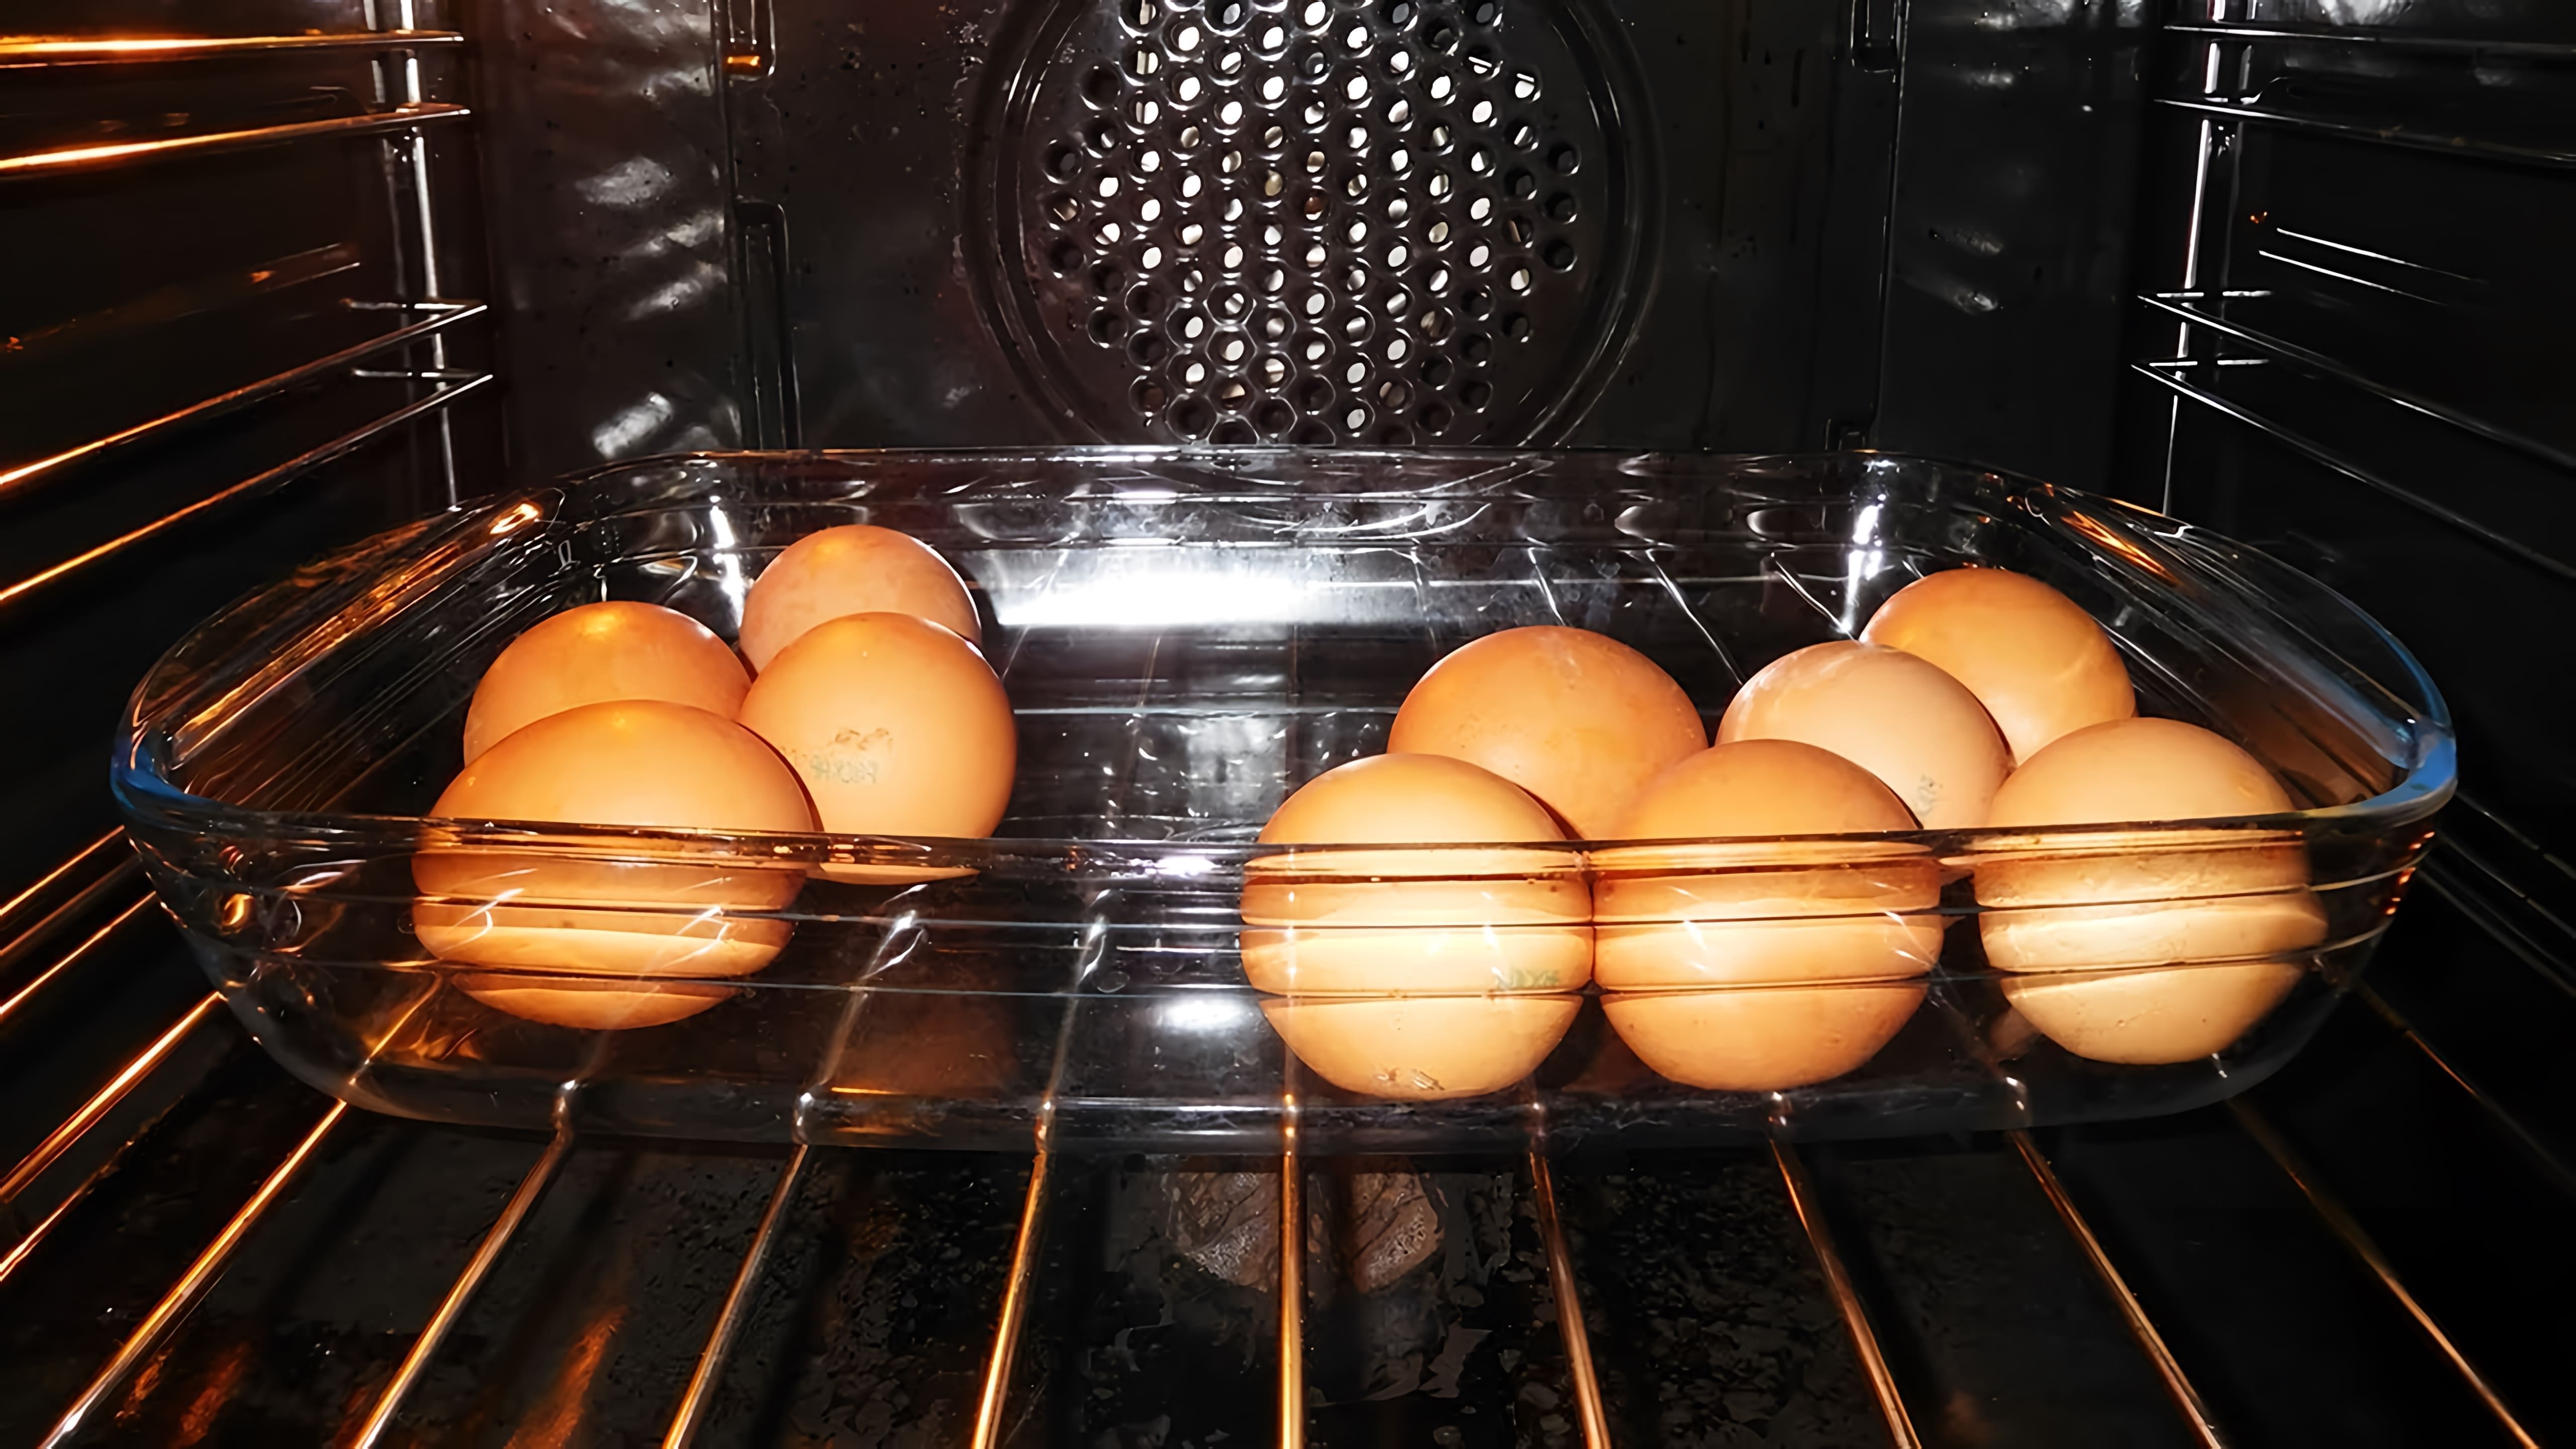 В этом видео демонстрируется процесс запекания куриных яиц в духовке